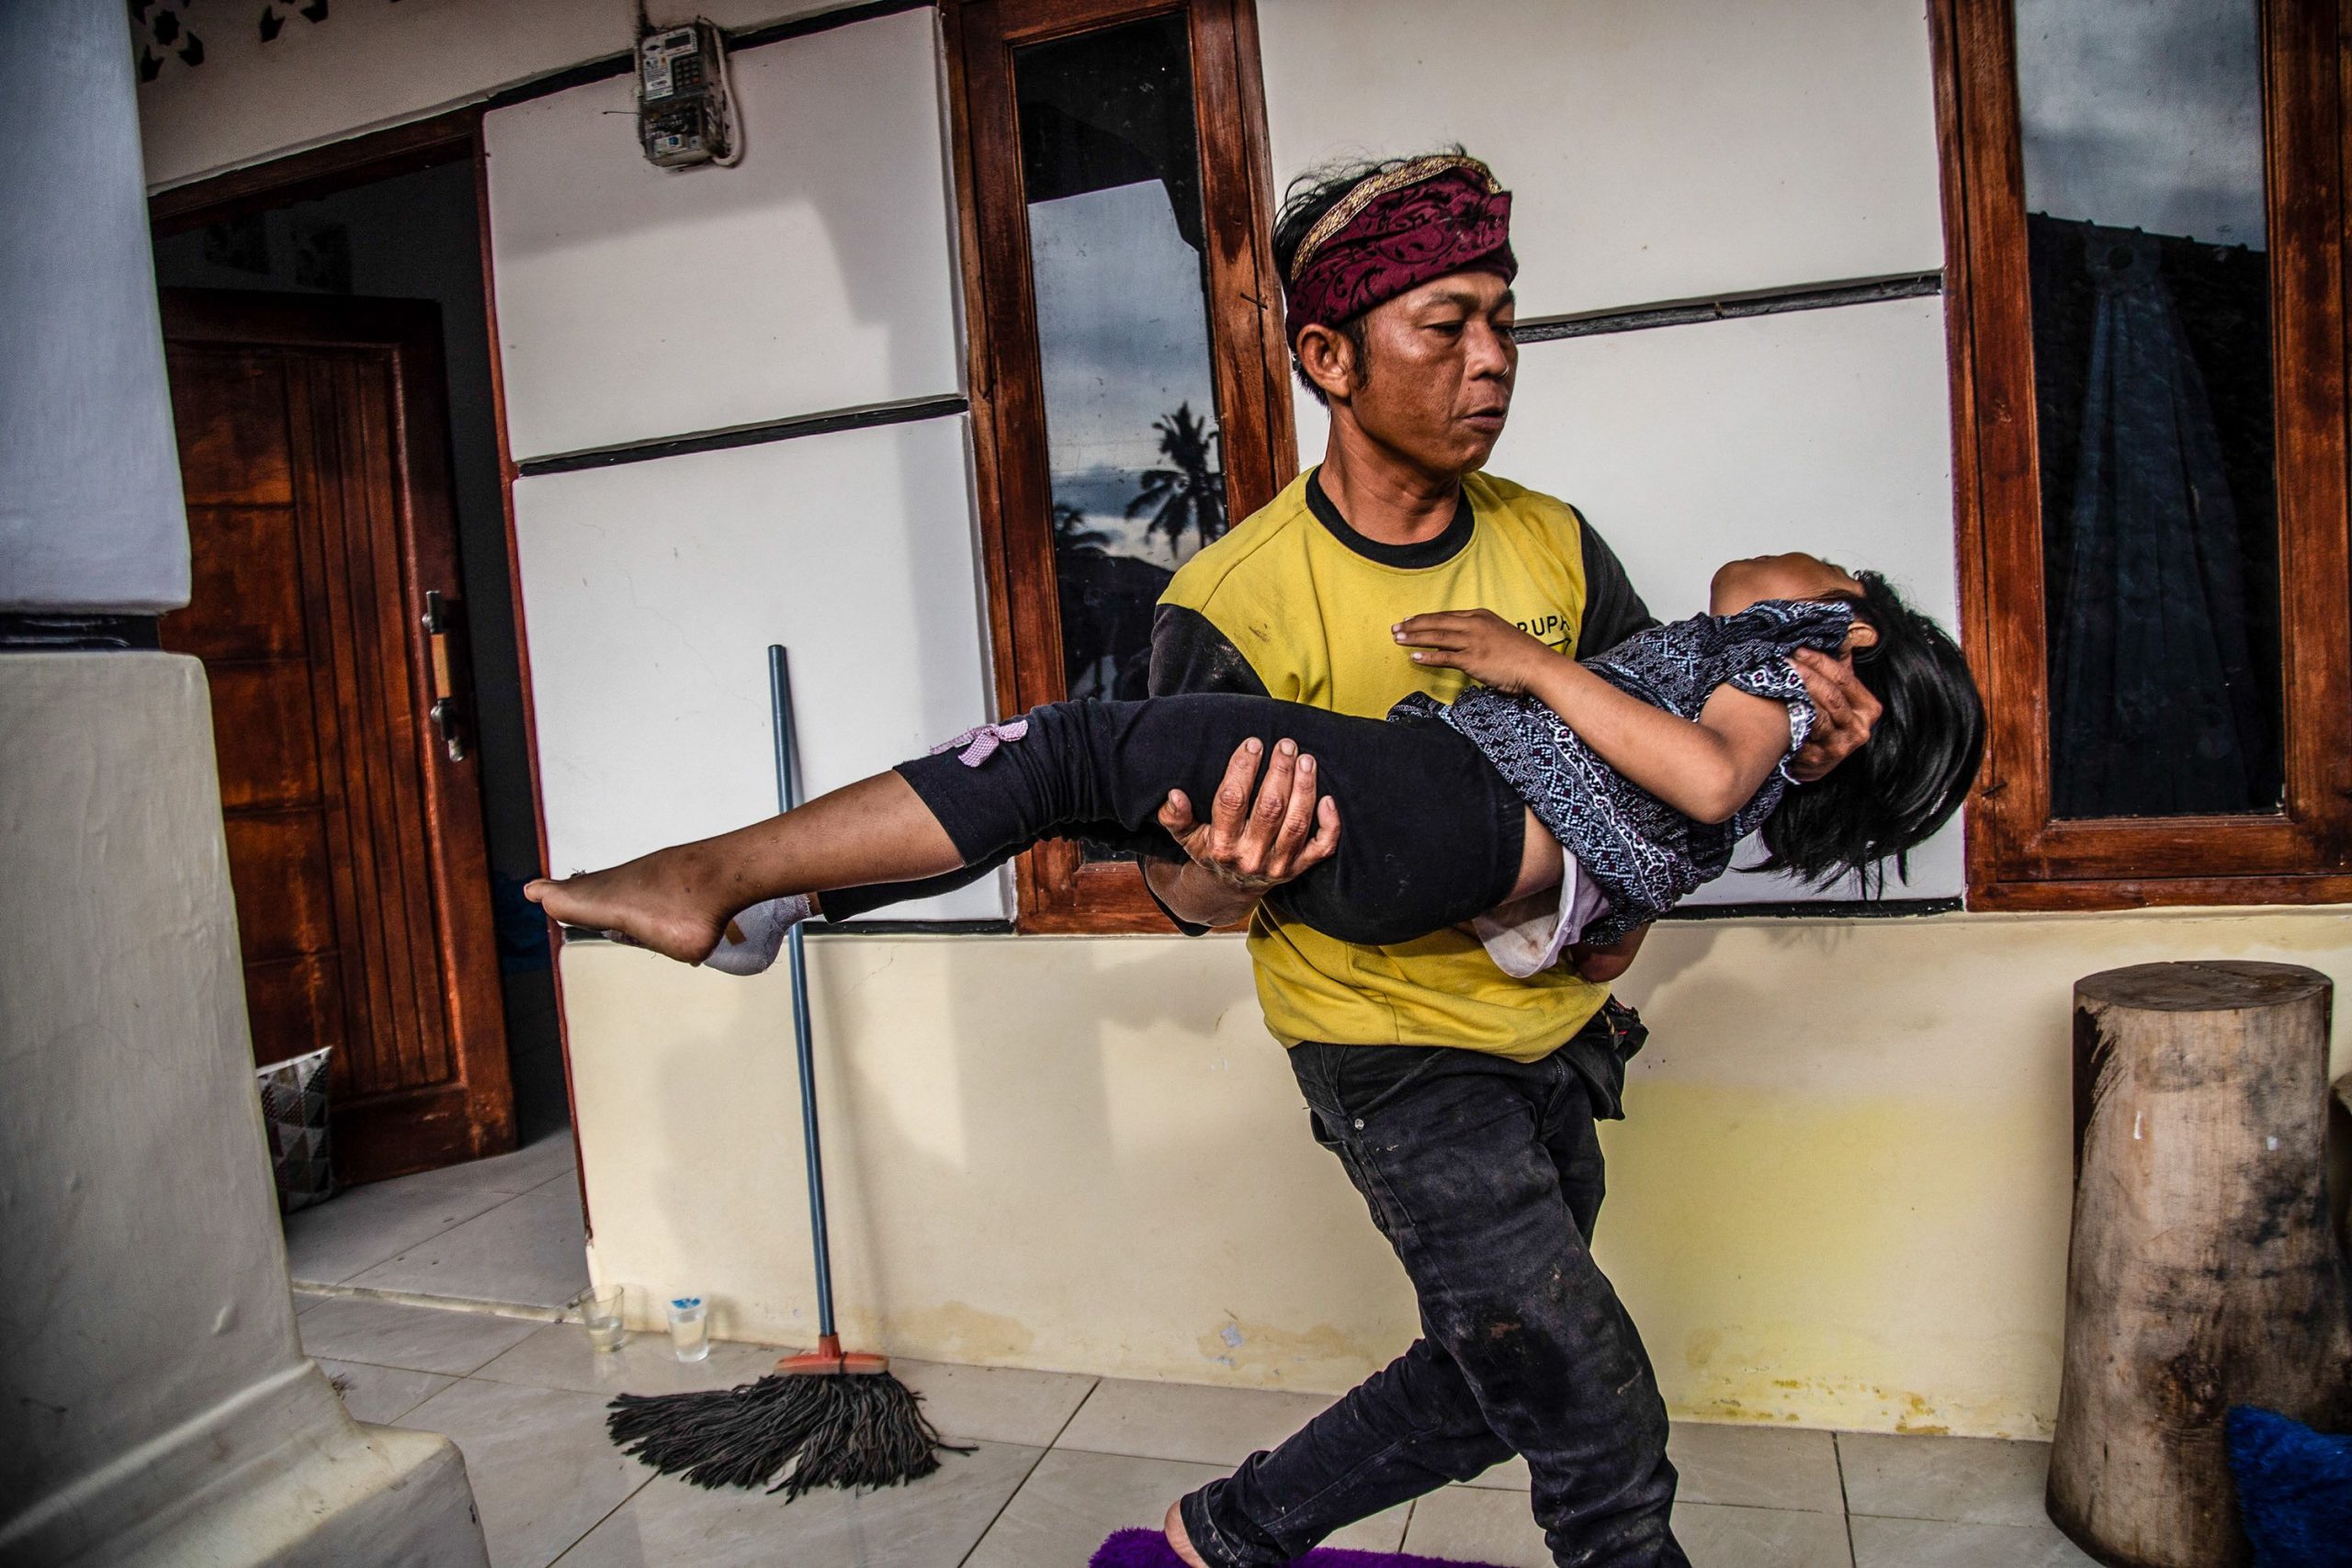    印尼地震 家破人亡  逾1.3万人无家可归